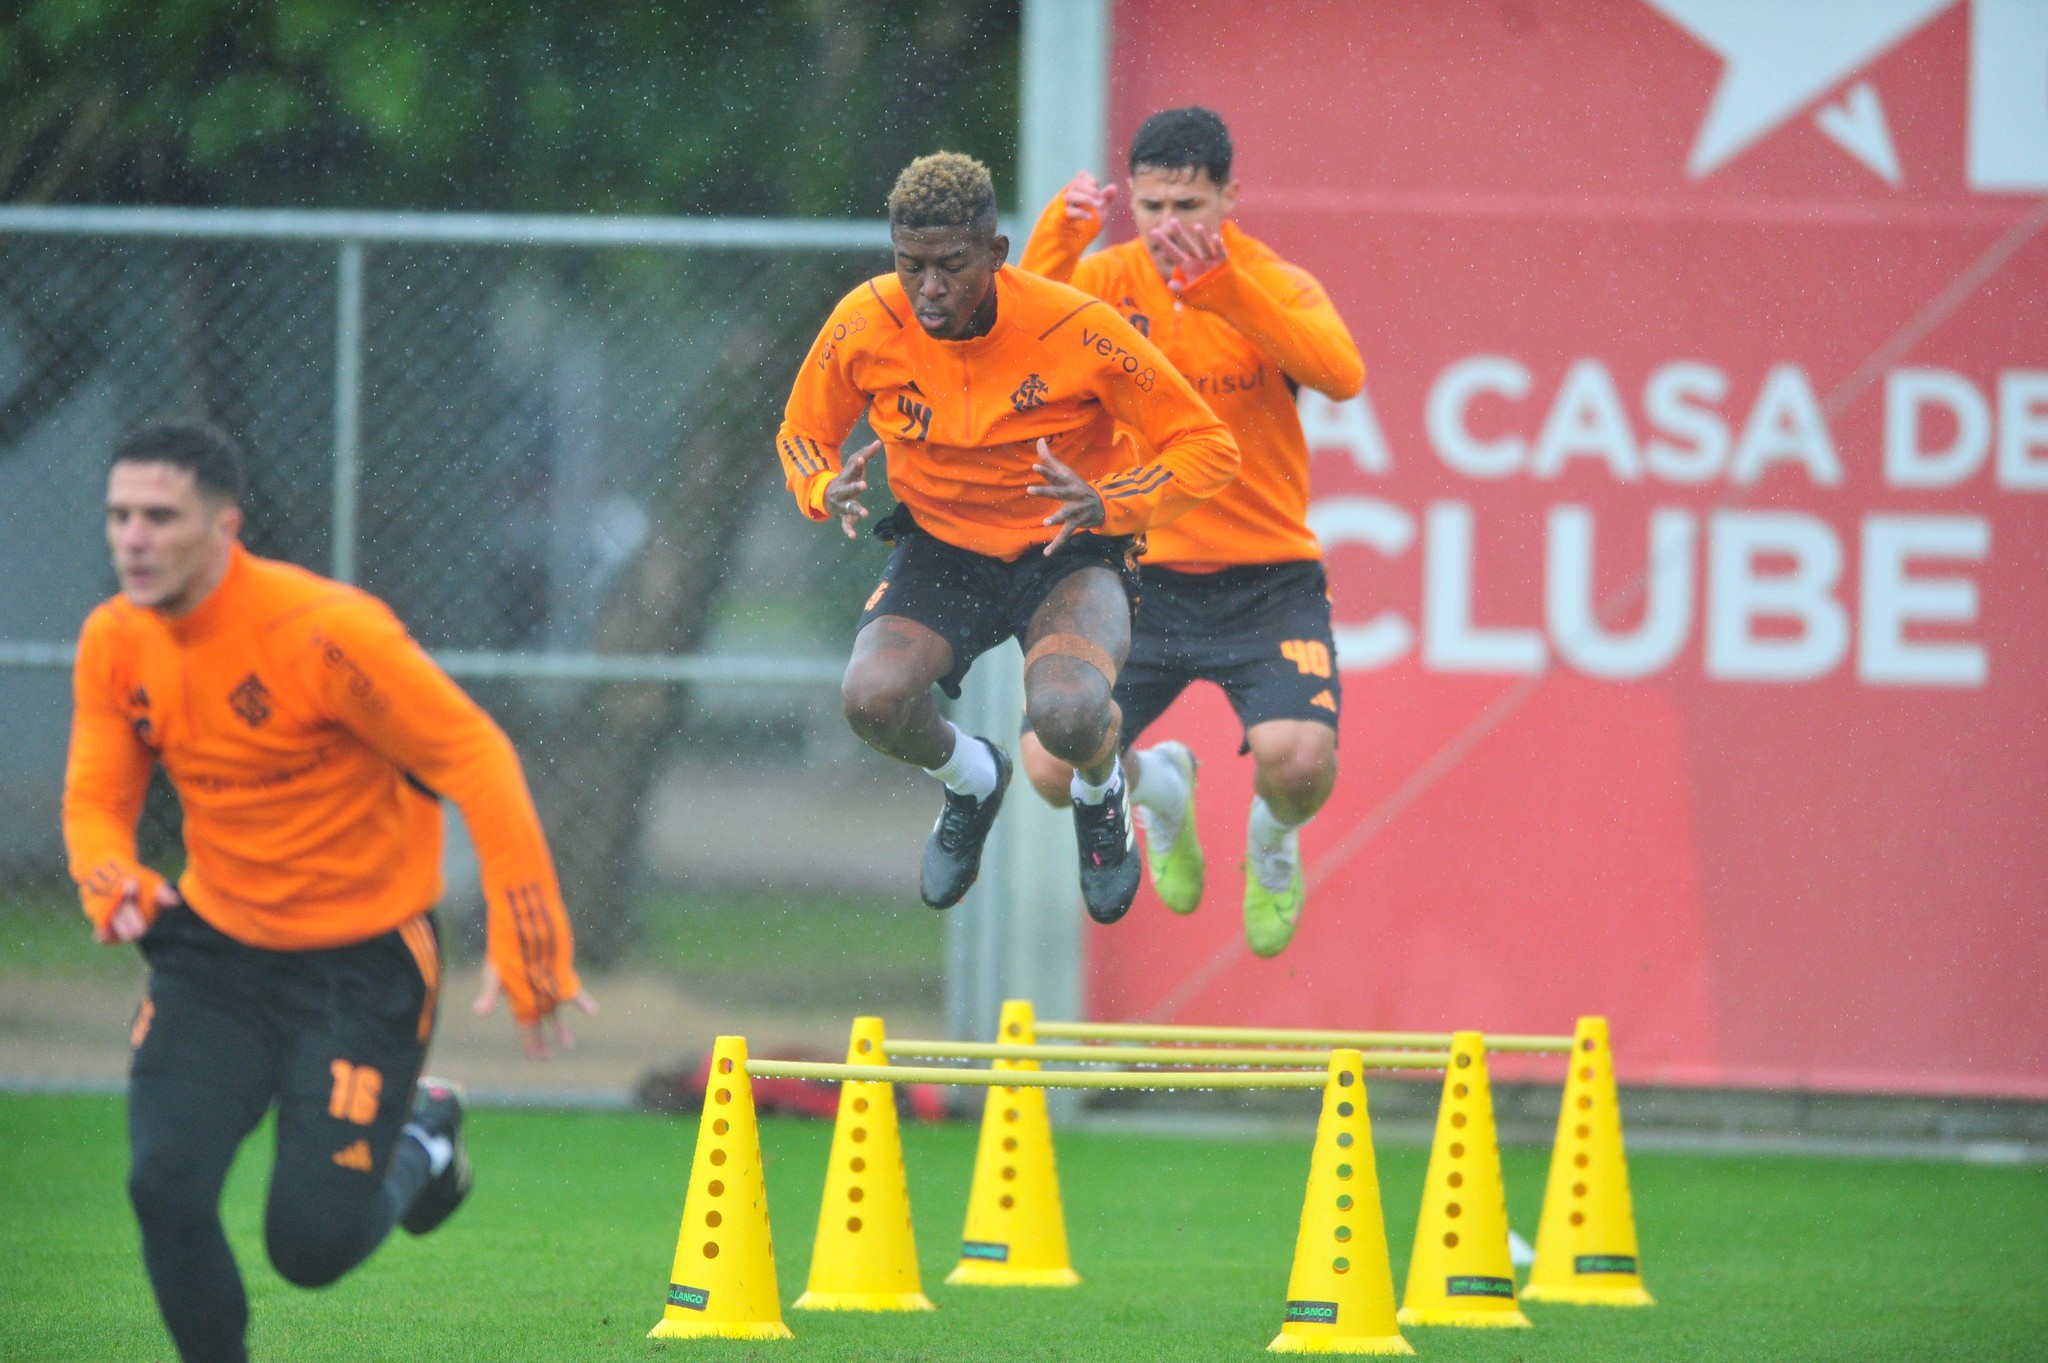 Atletas do Inter fazem trabalhos de preparação física - (Foto: Ricardo Duarte / Internacional)